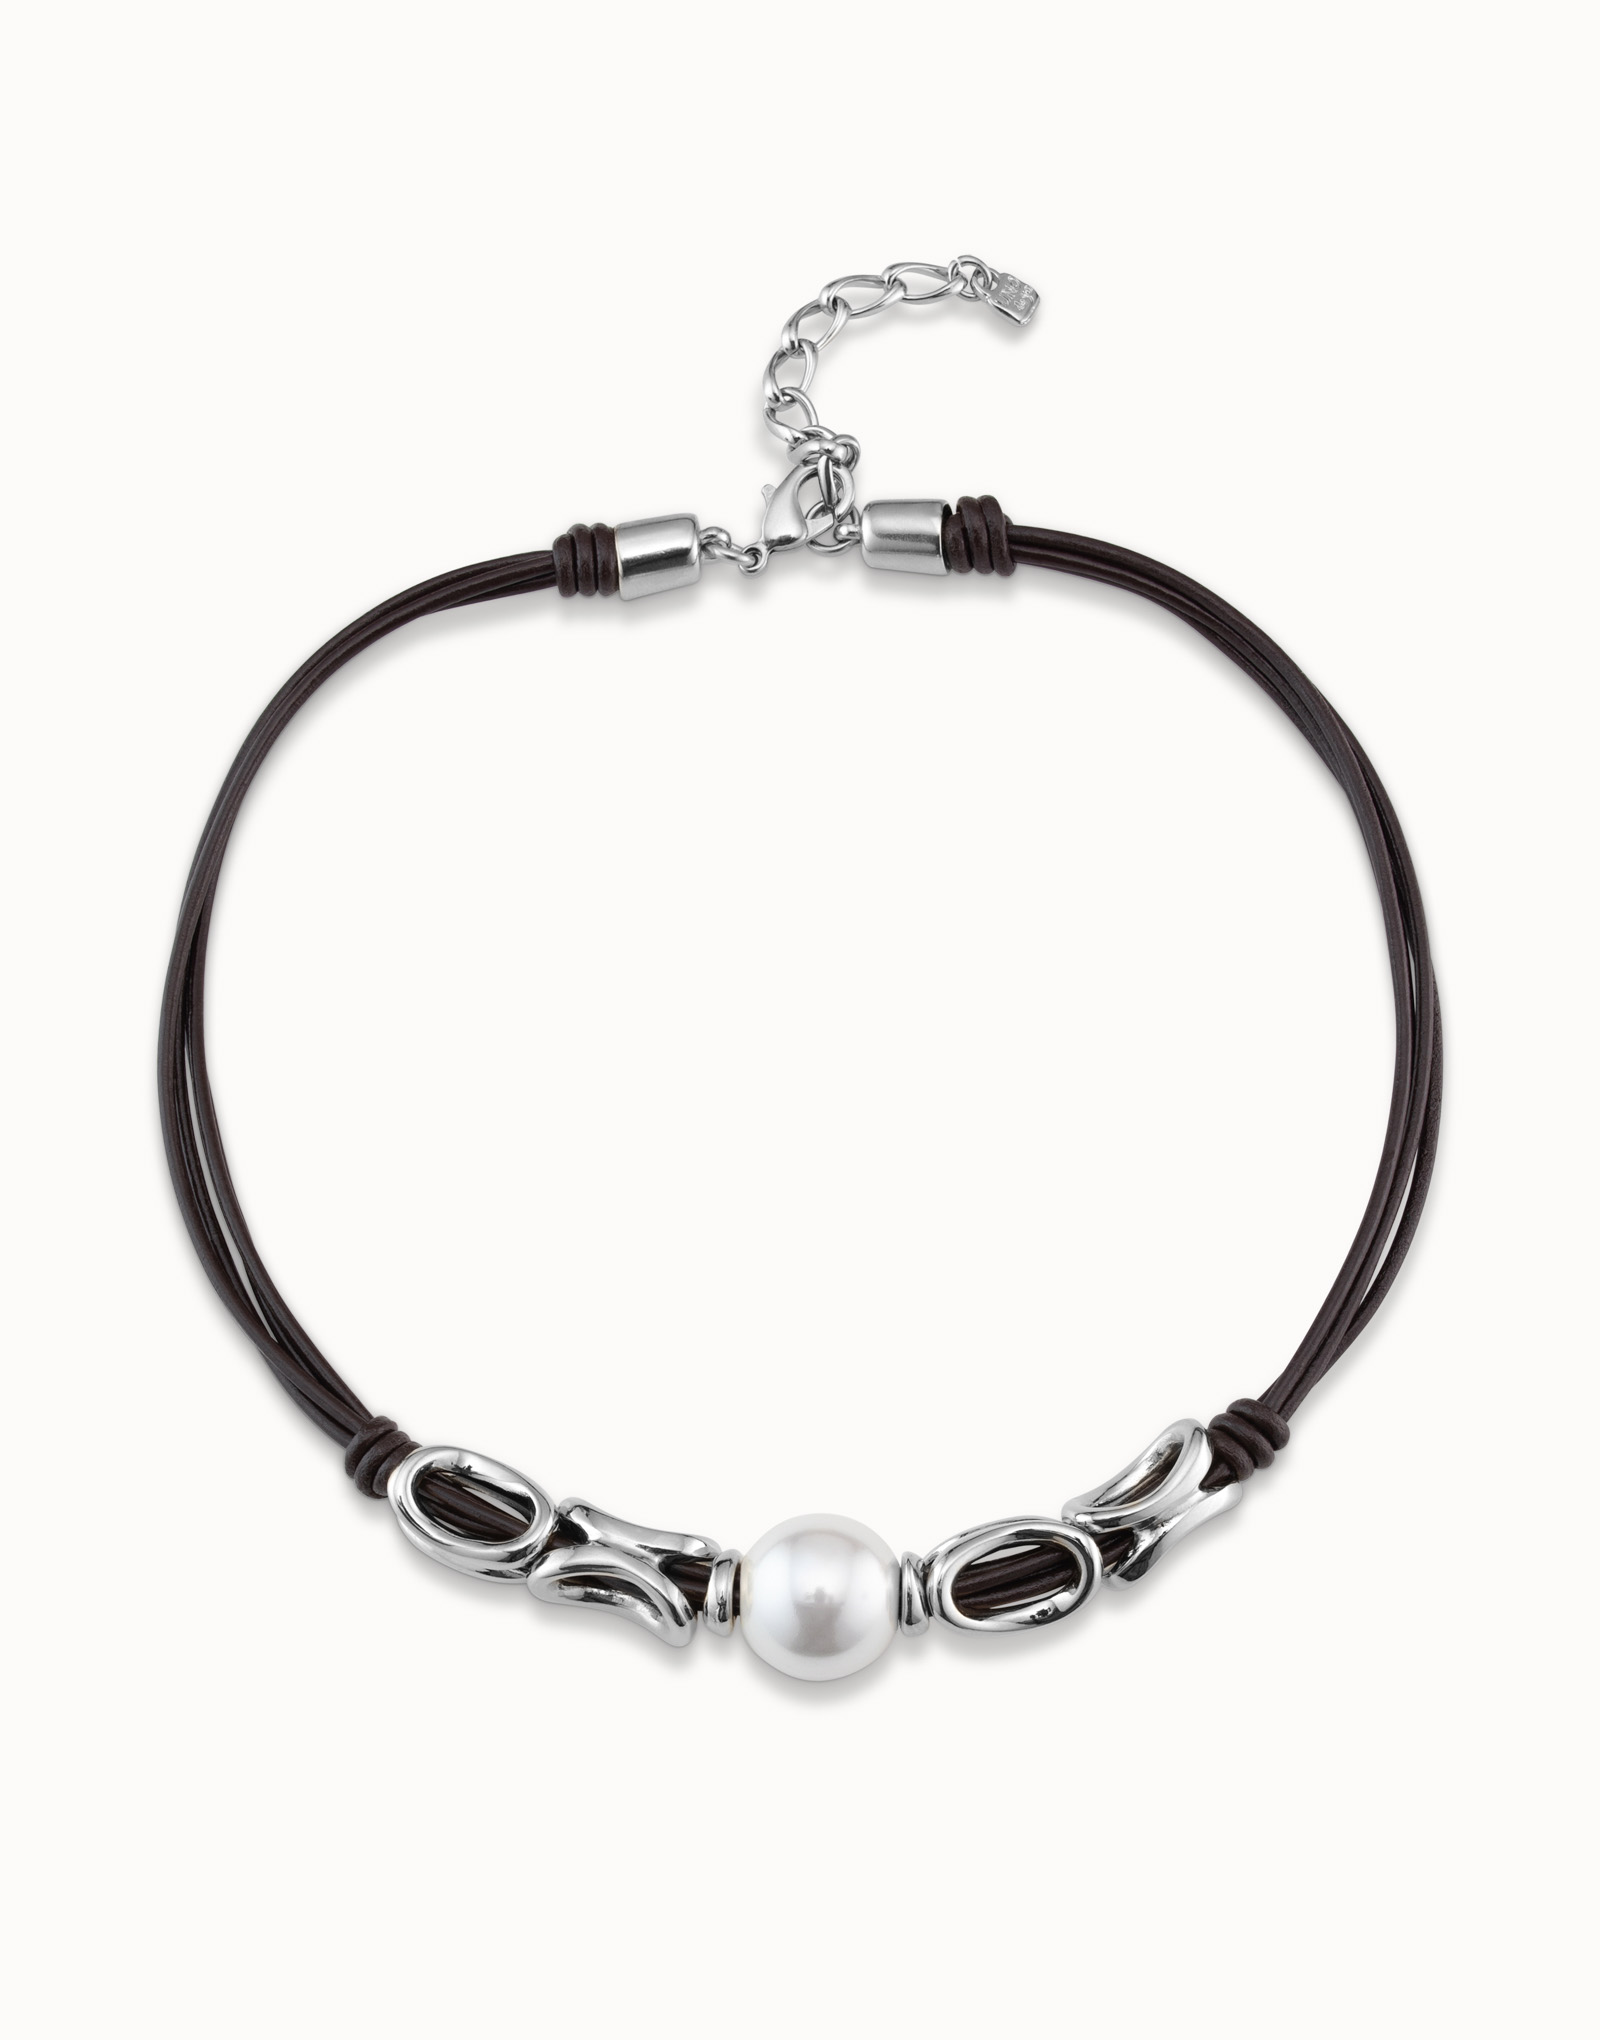 Collana corta con 4 strisce di cuoio a maglie placcata argento Sterling e perla al centro, Argent, large image number null